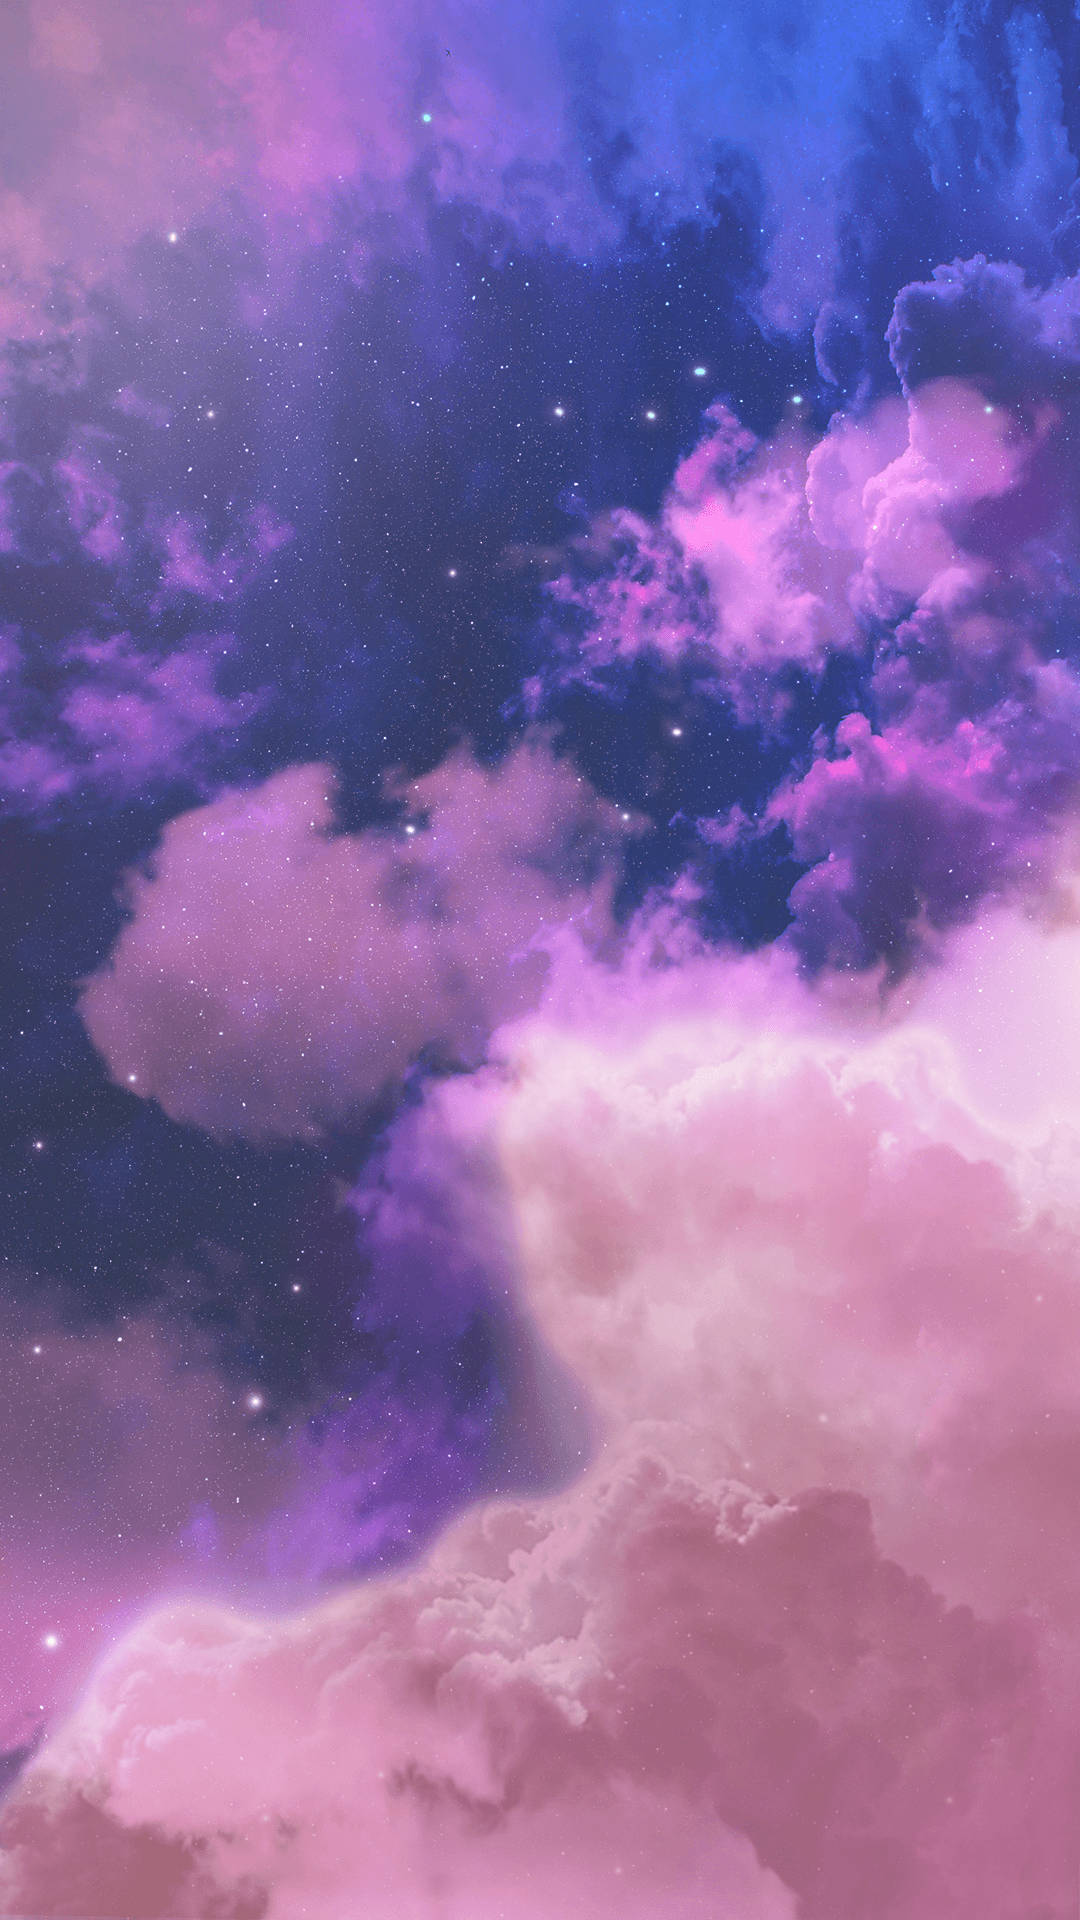 Kig op mod himlen - en sø af lilla skyer Wallpaper